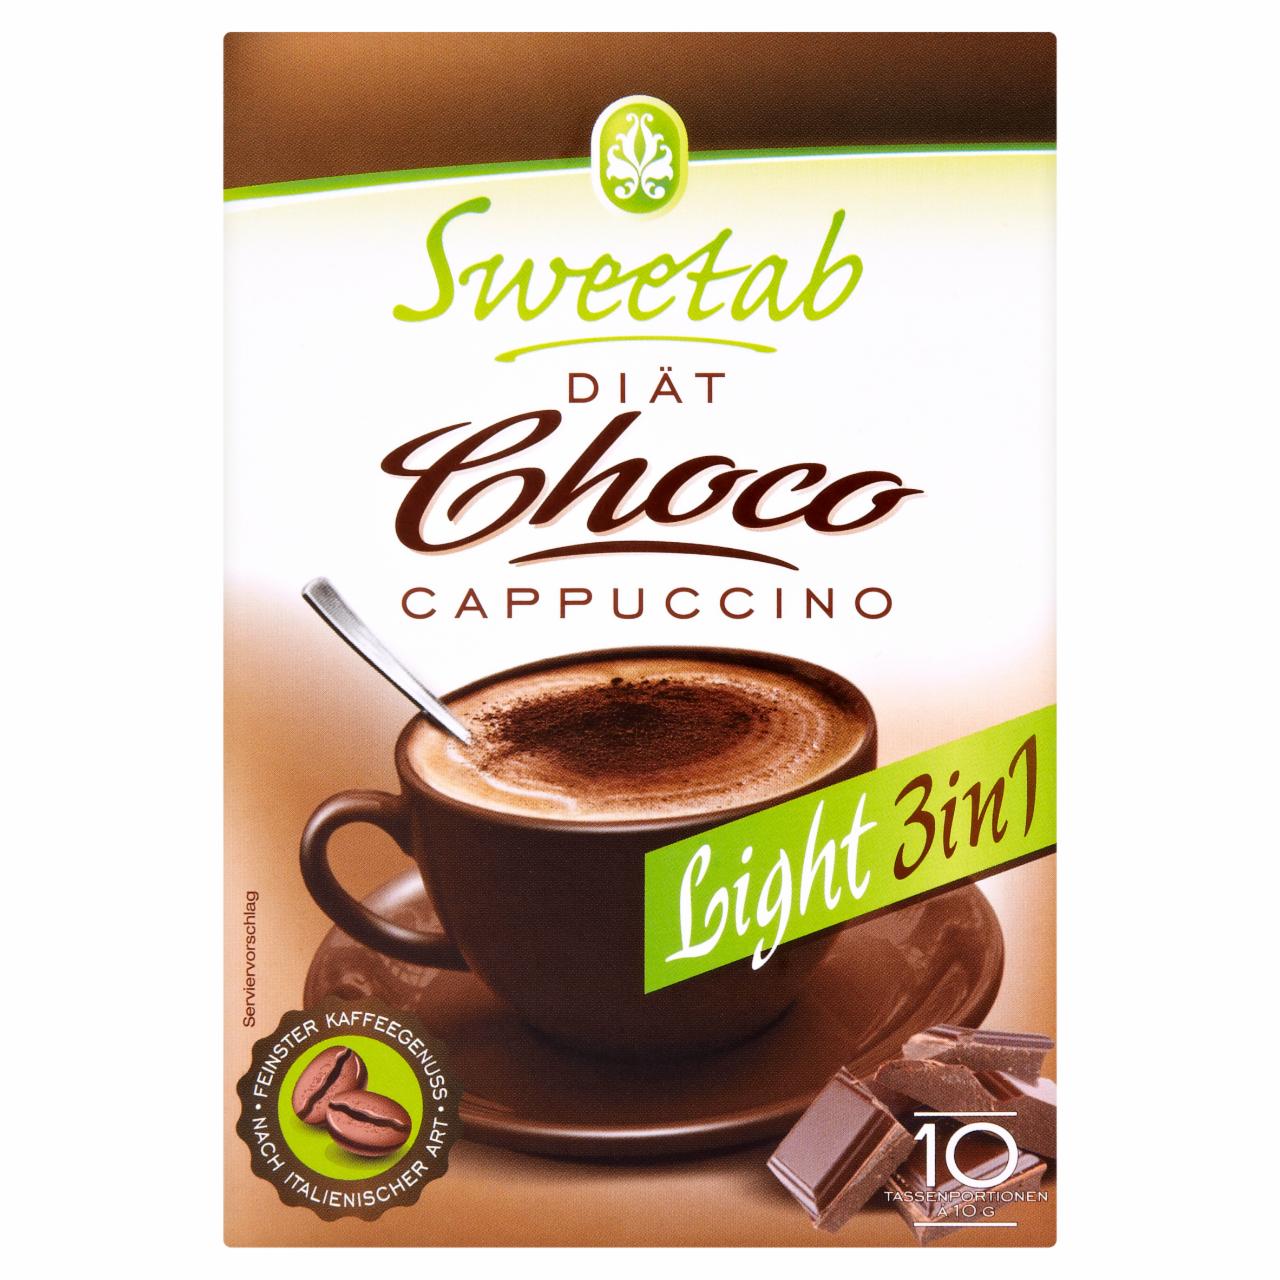 Képek - Sweetab Light 3in1 diétás csokoládés cappuccino 10 db 100 g